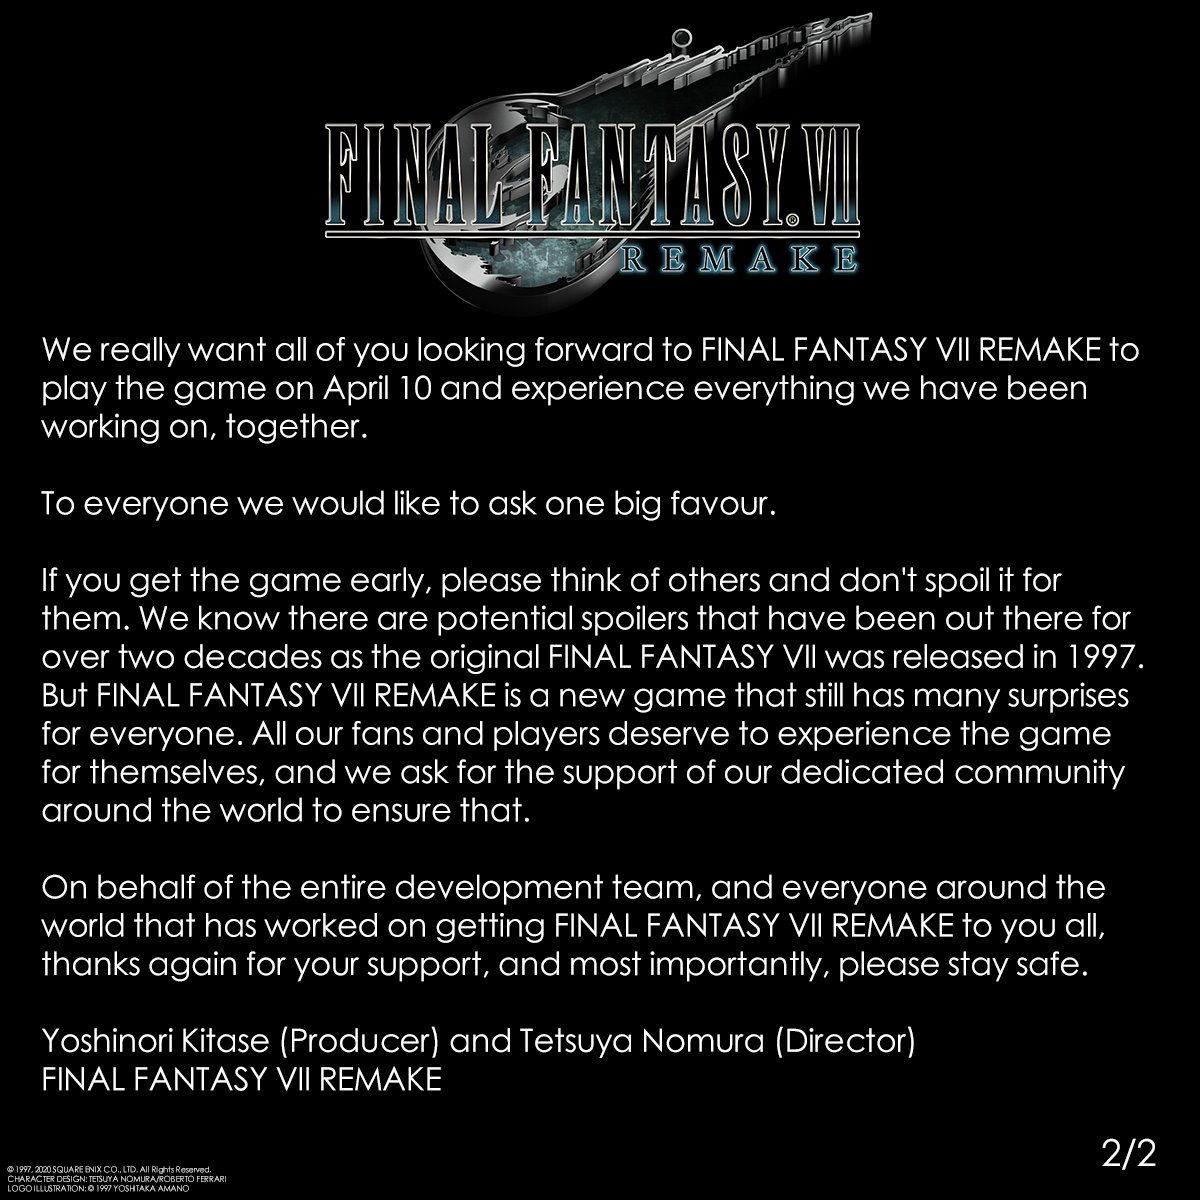 Final Fantasy VII Remake - Разработчики попросили игроков не спойлерить